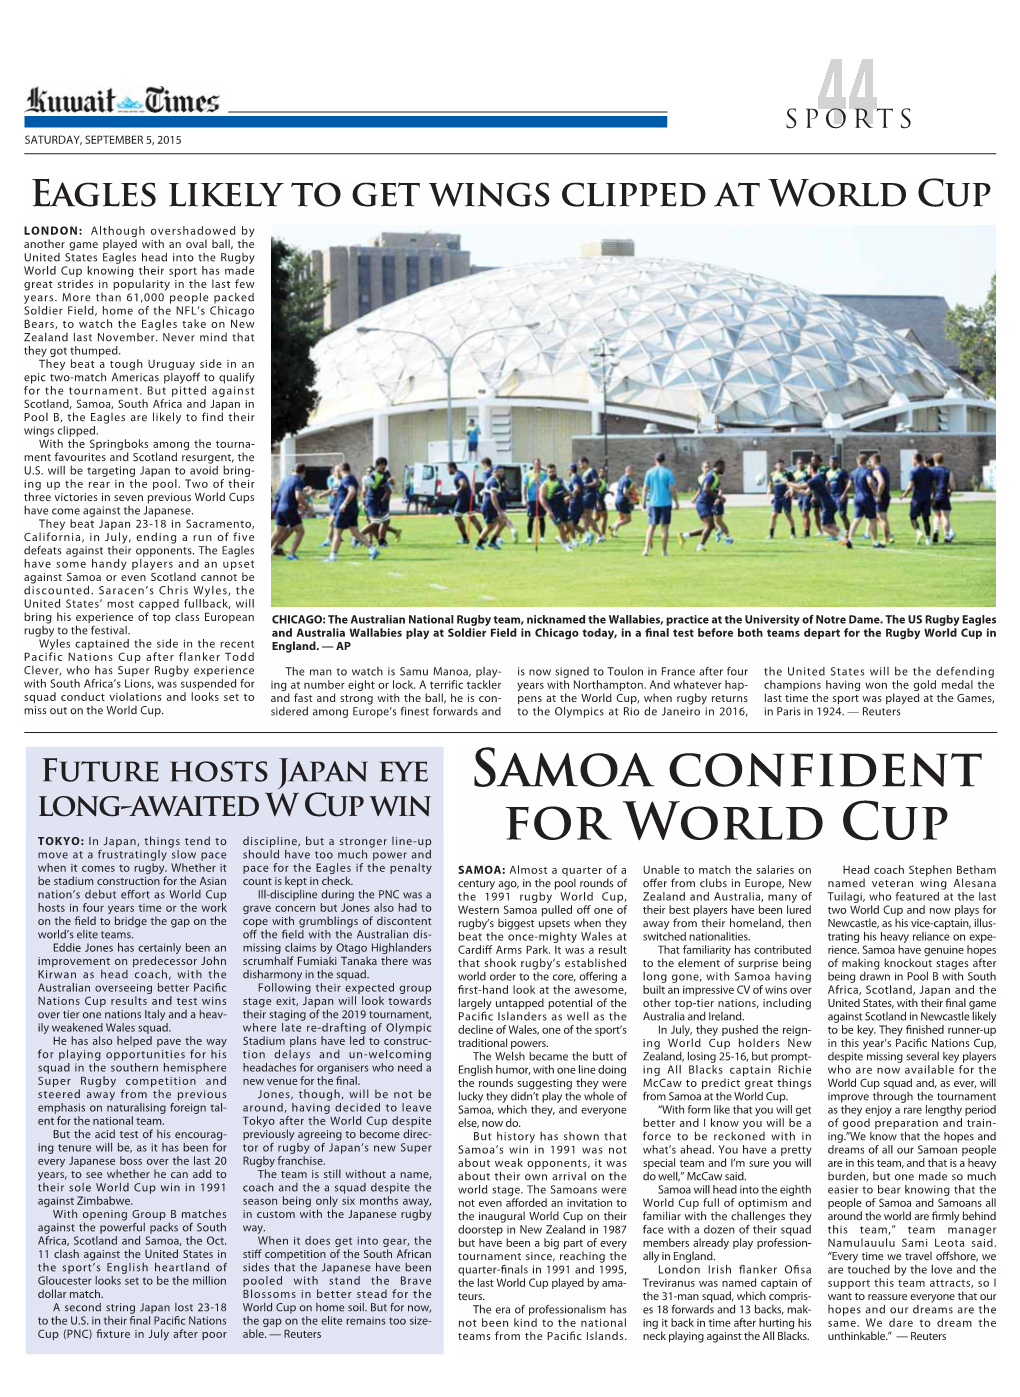 Samoa Confident for World